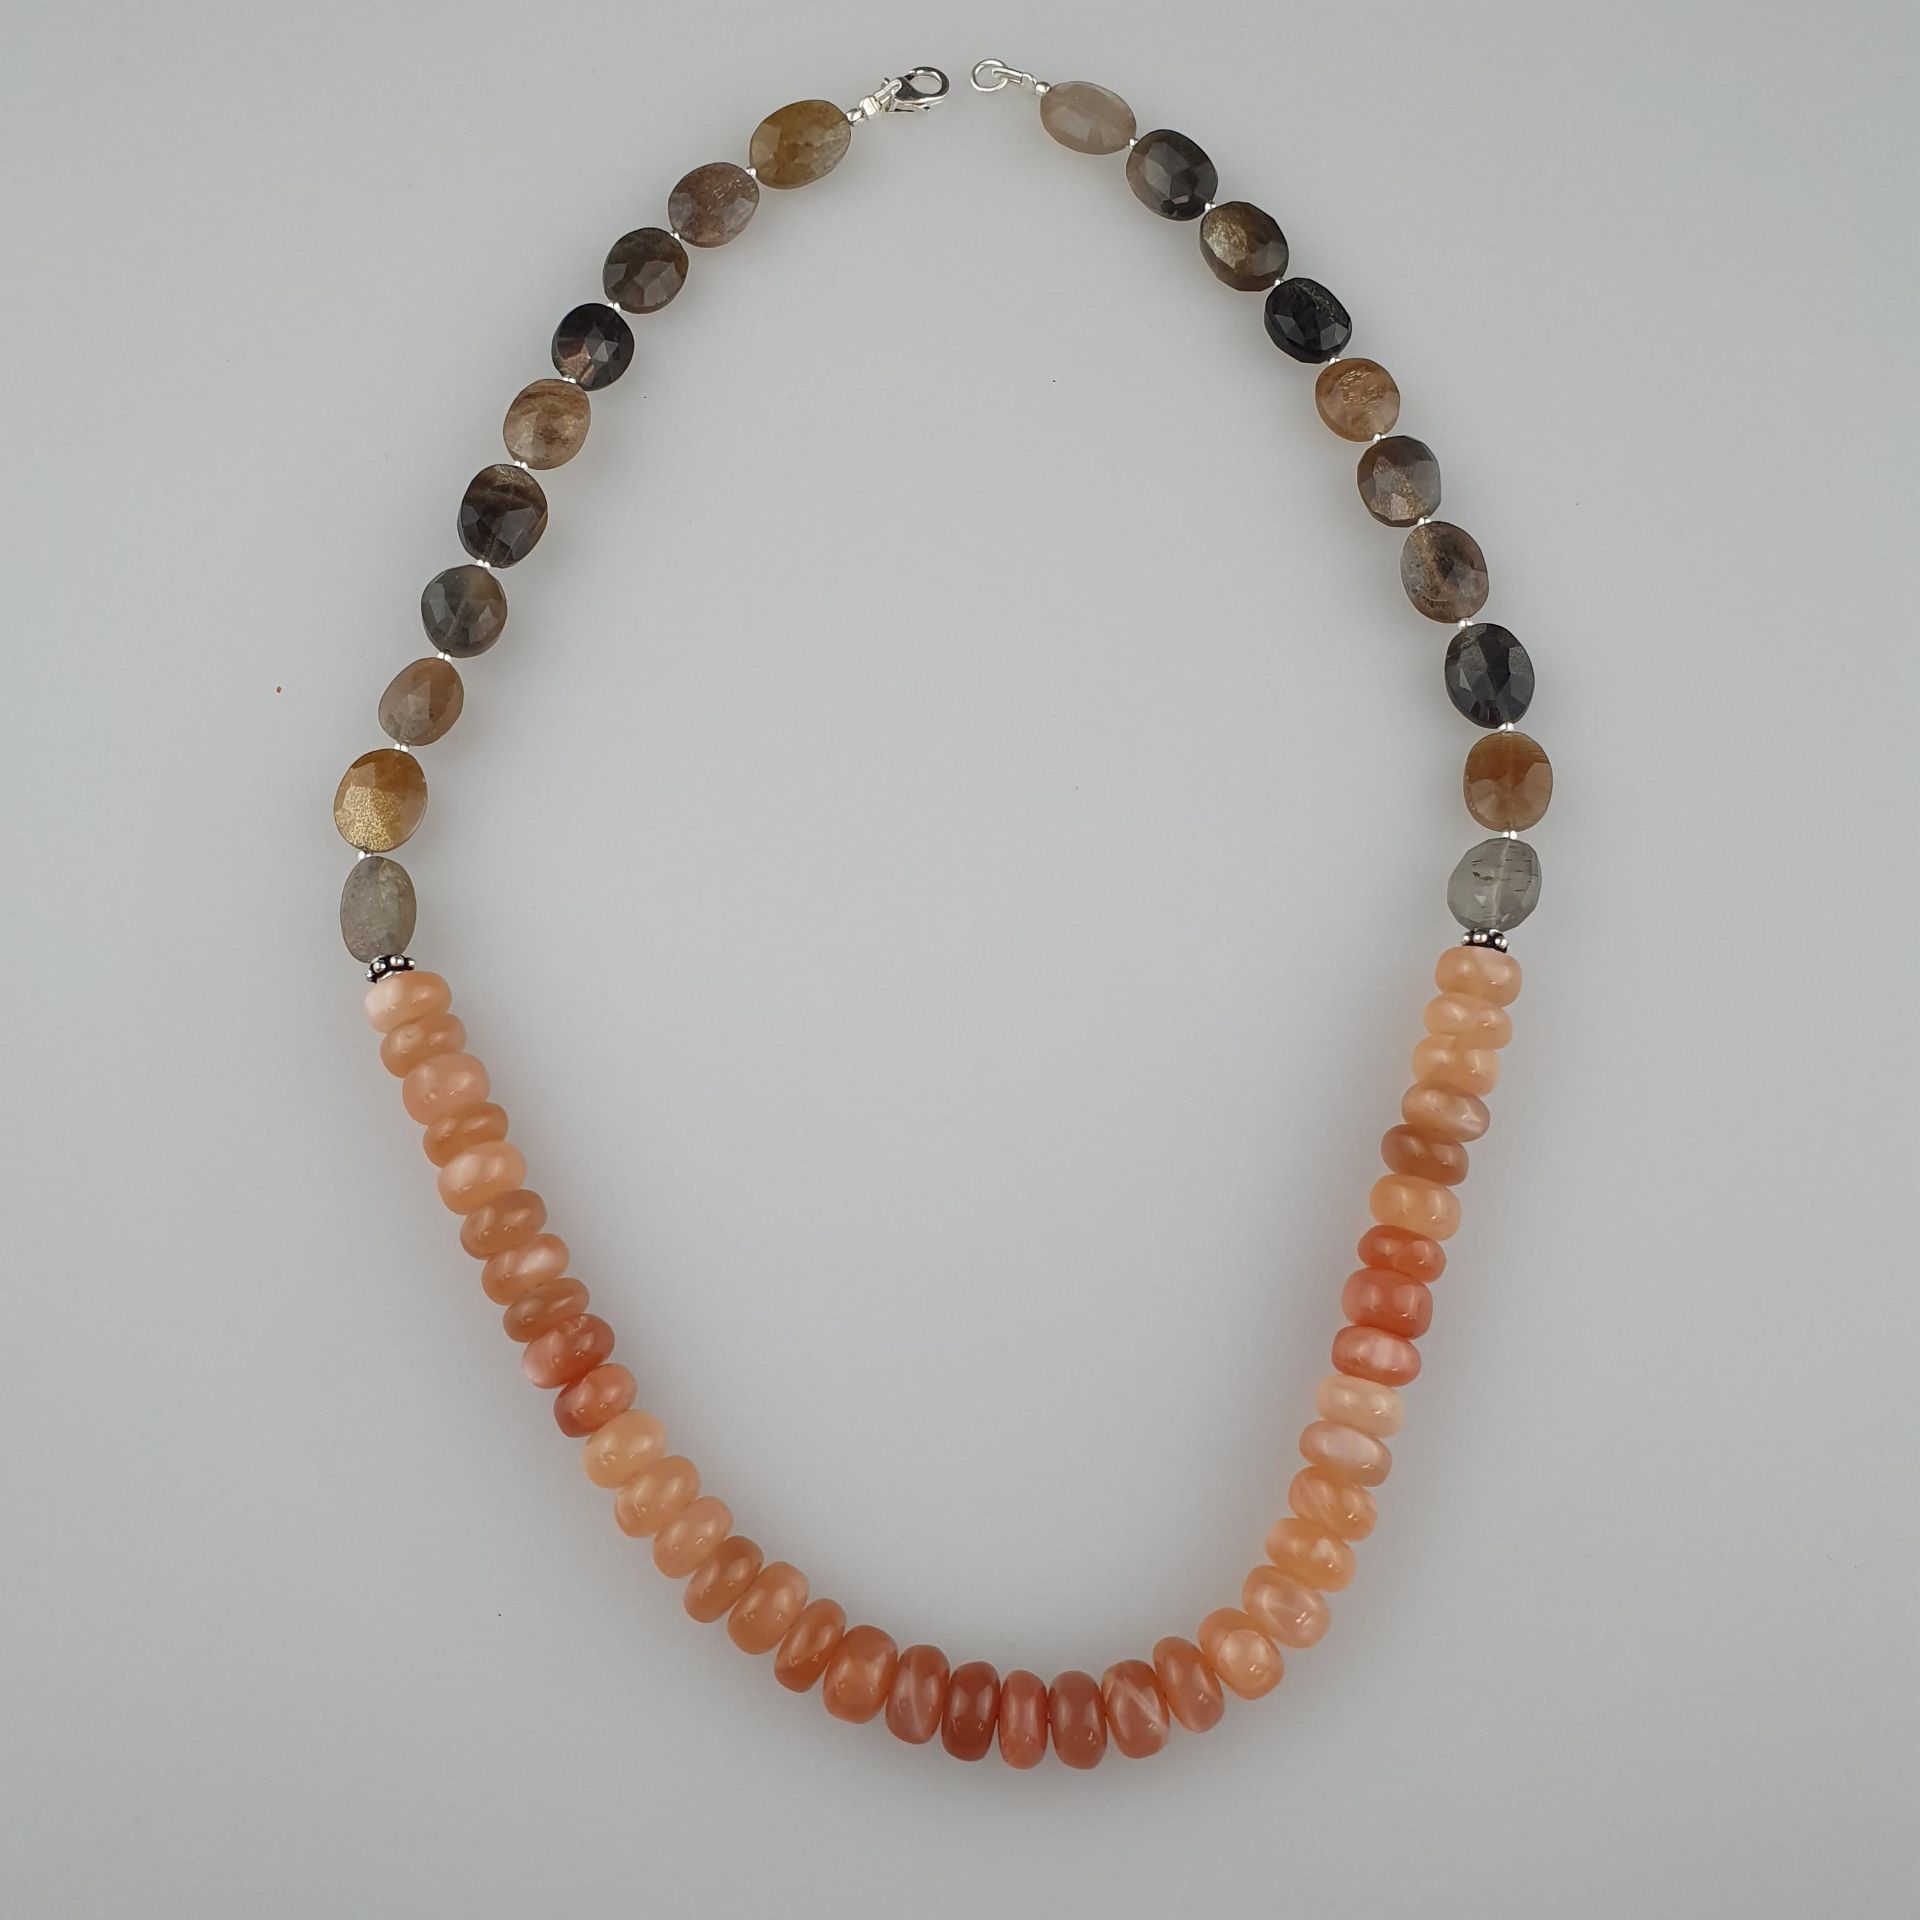 Mondstein-Collier - Halskette mit verschiedenfarbigen | 222cts Moonstone Necklace made of oval and